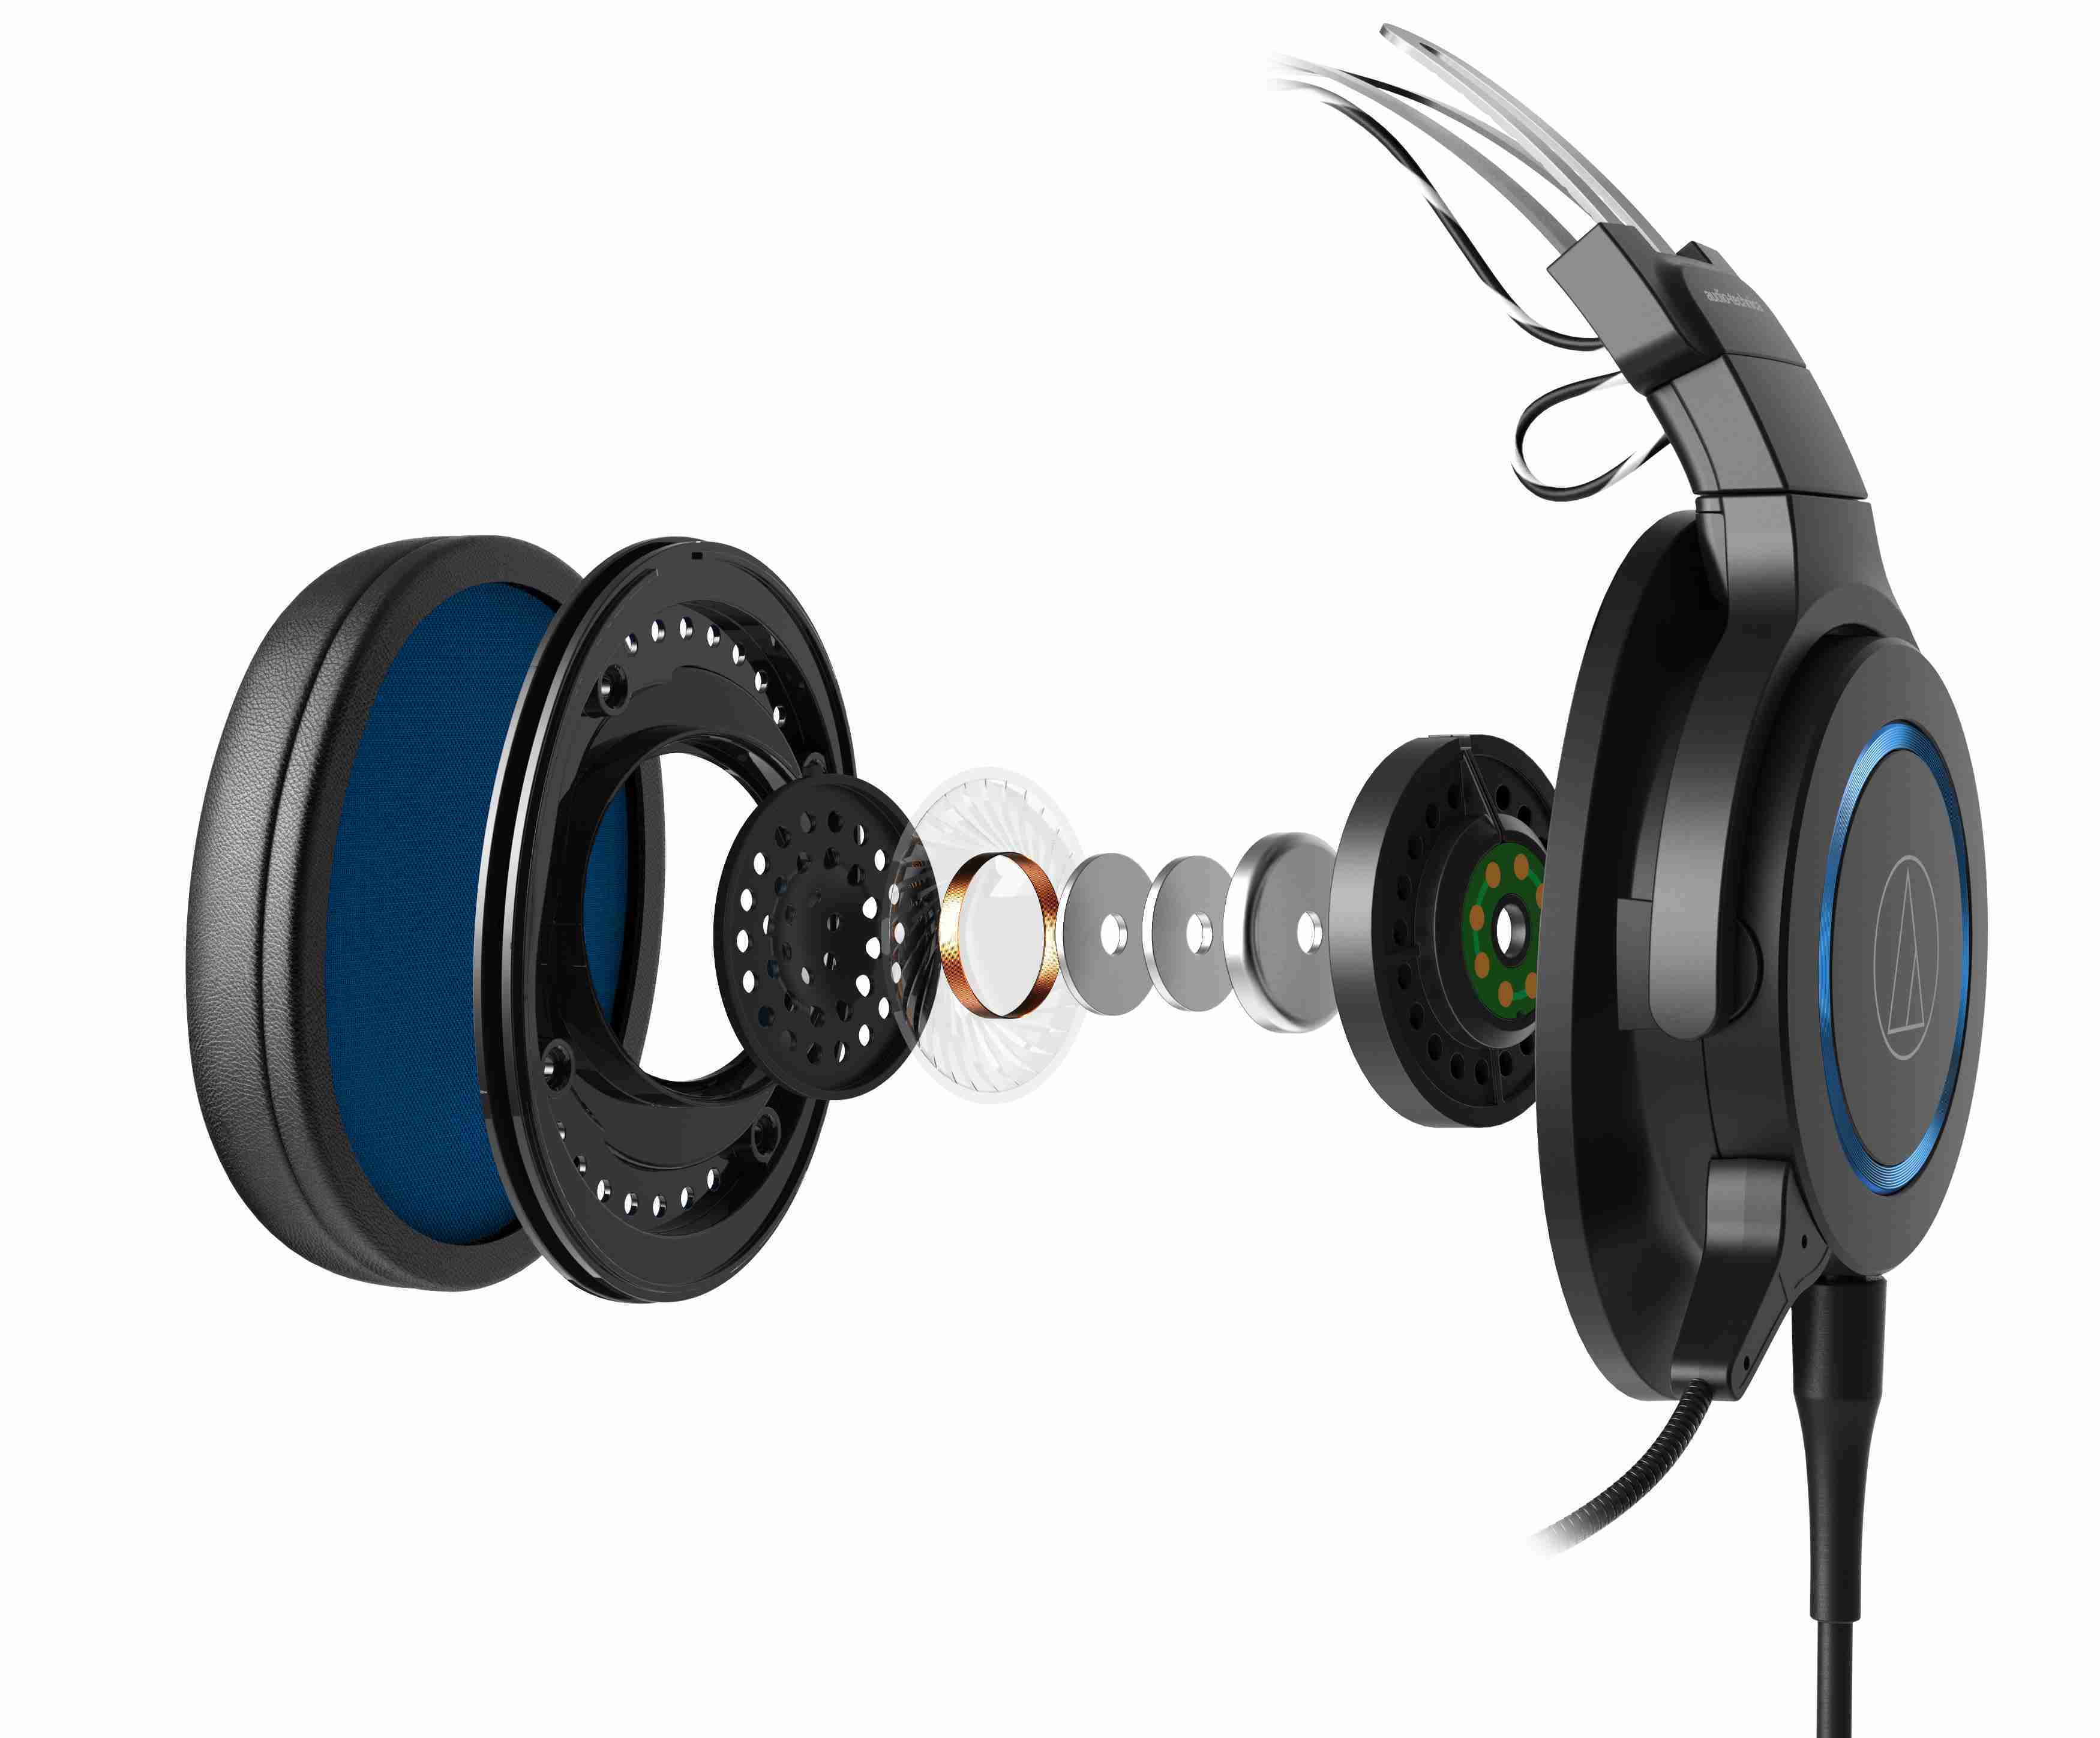 鐵三角 ATH-G1 黑色 專業 電競 耳罩式耳機 可拆式 麥克風 | 金曲音響